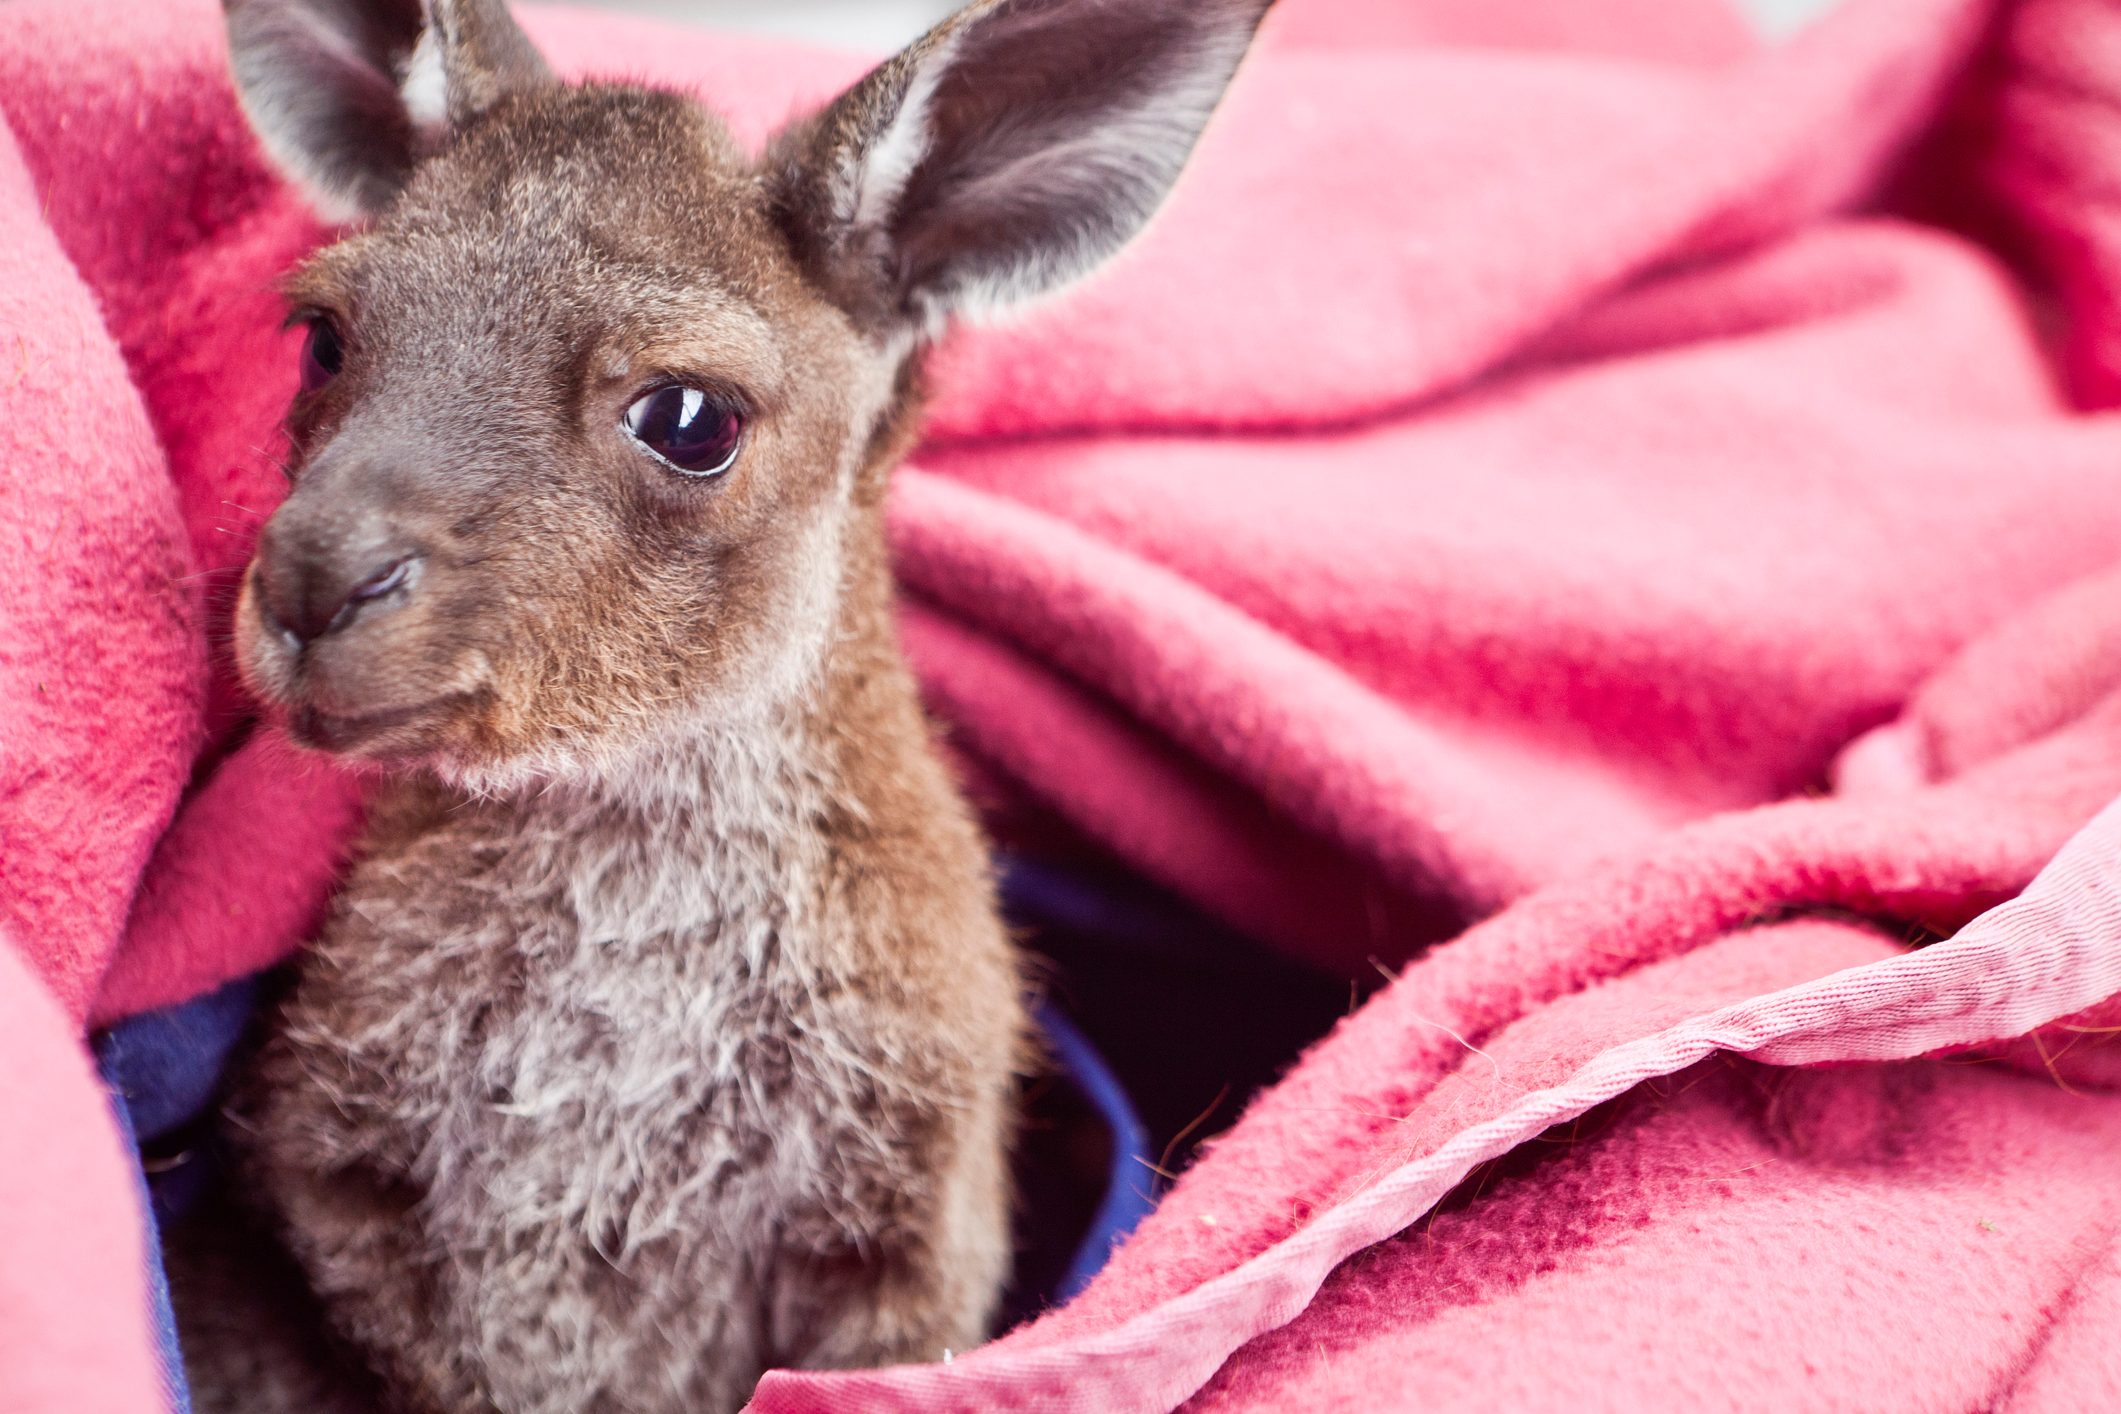 Baby Kangaroo - Joey